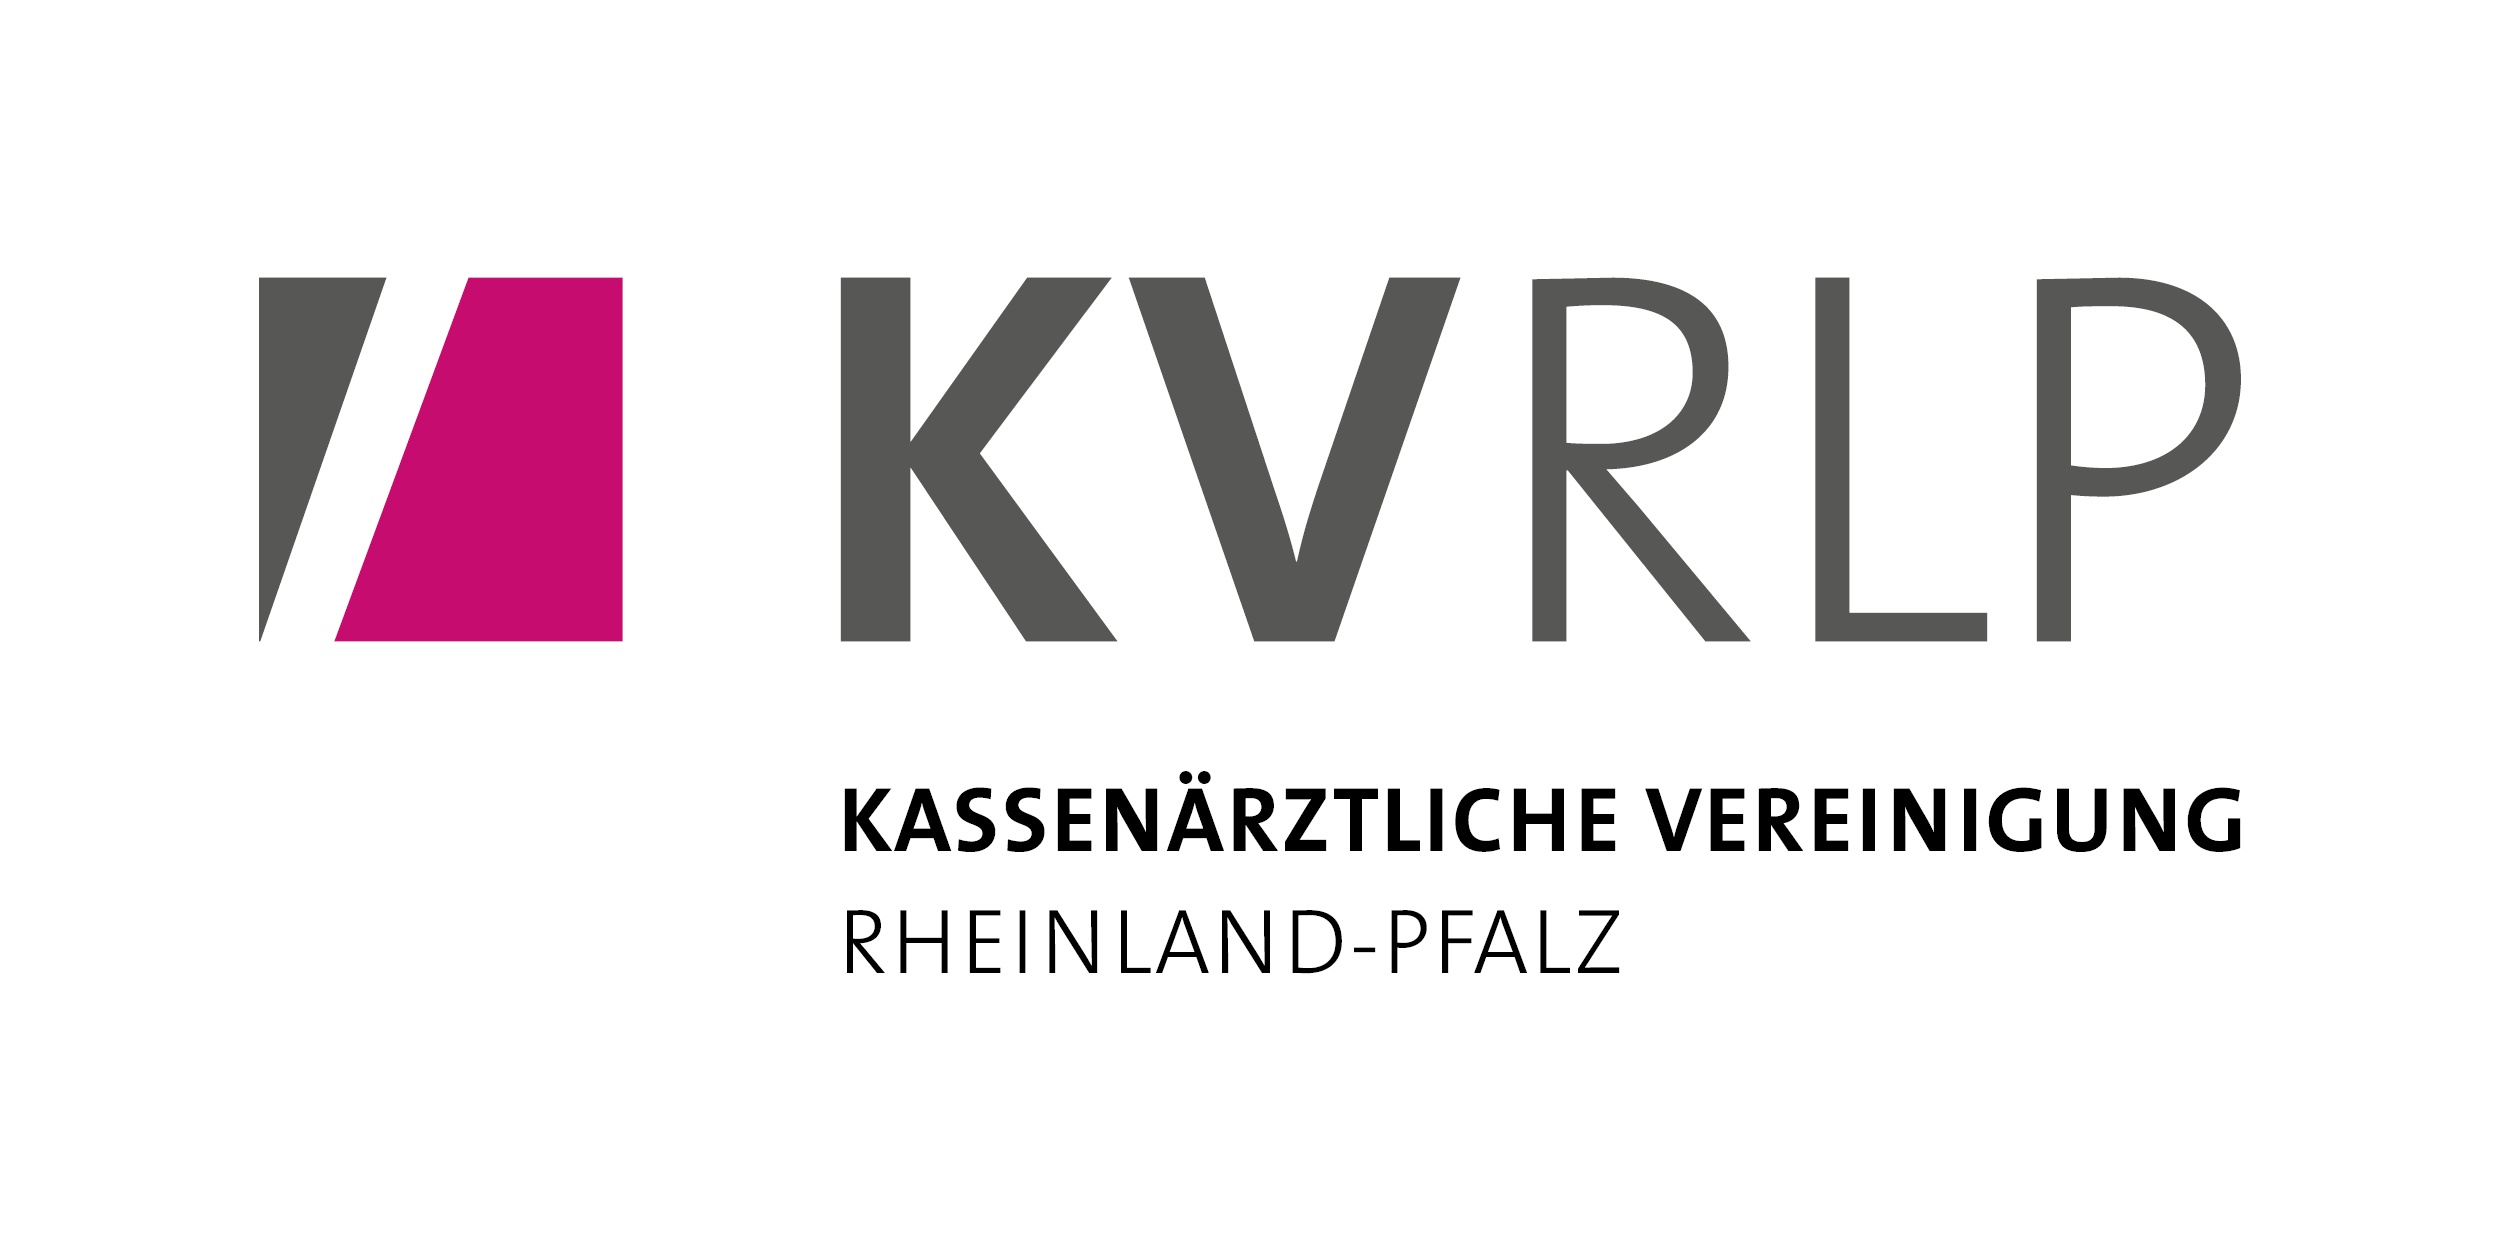 Das Bild zeigt das Logo der KV Rheinland-Pfalz.